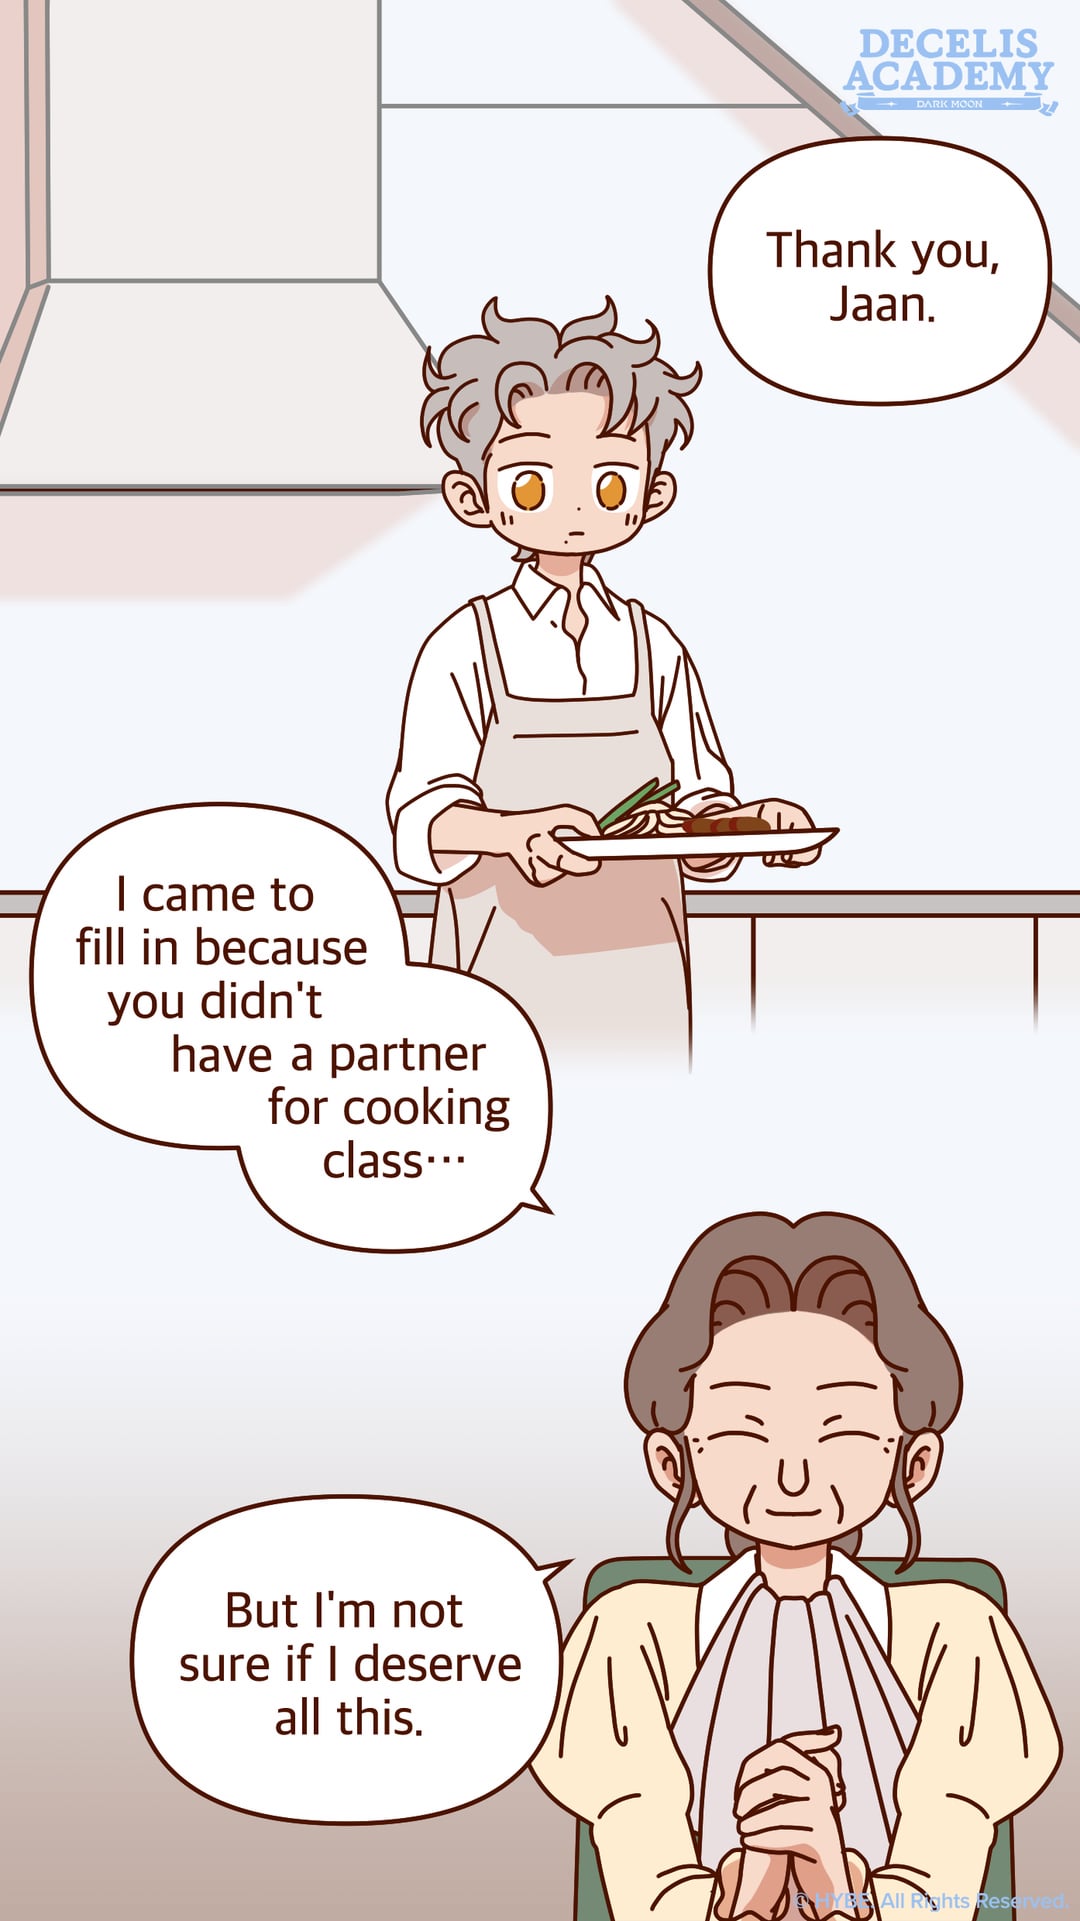 231210 DARK MOON Twitter: Decelis Academy Cuttoon - [Ep.6] Jaan's Cooking